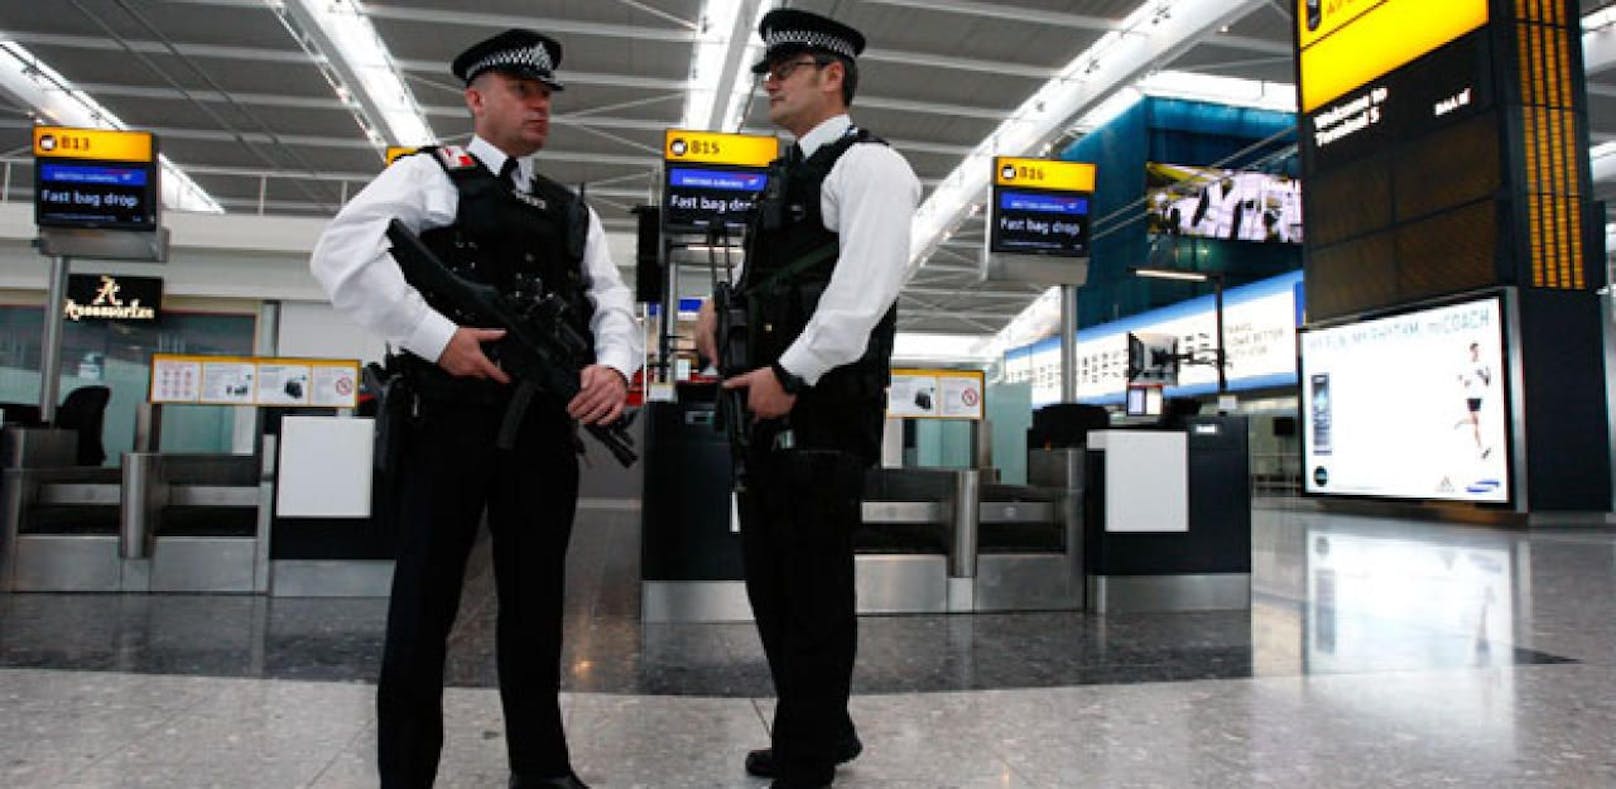 Polizisten am Londoner Flughafen Heathrow. Symbolbild.&nbsp;